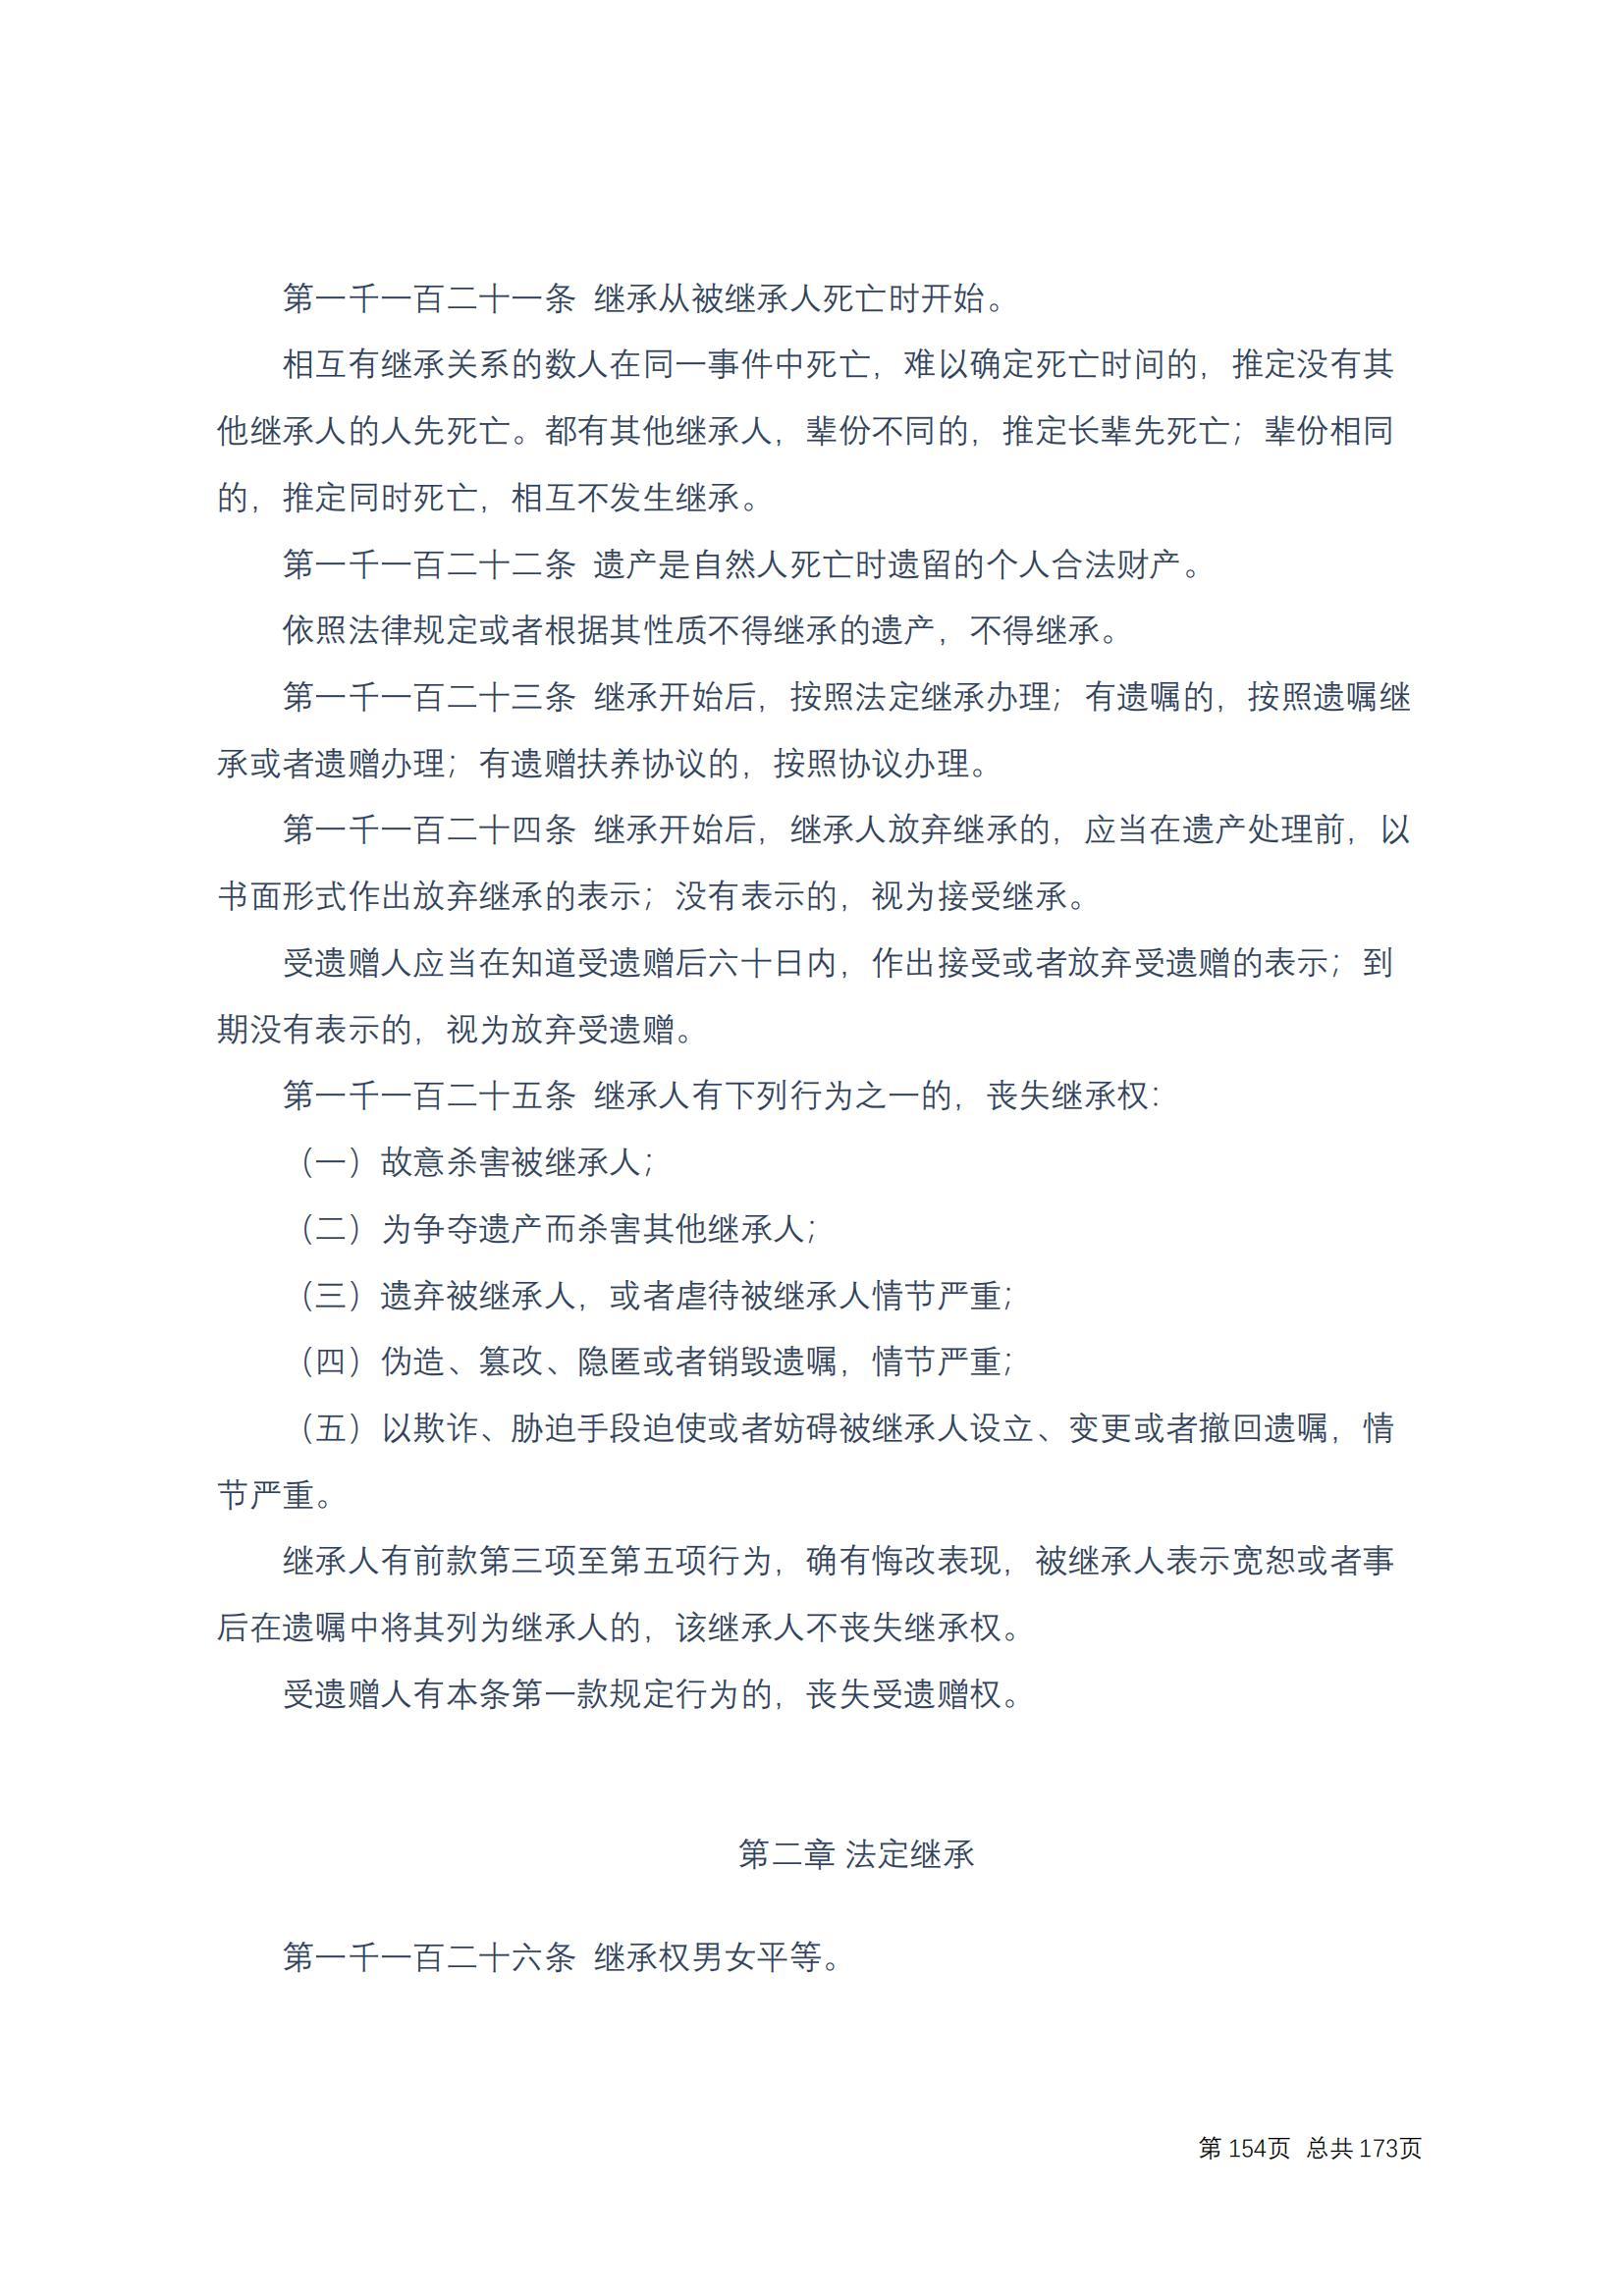 中华人民共和国民法典 修改过_153